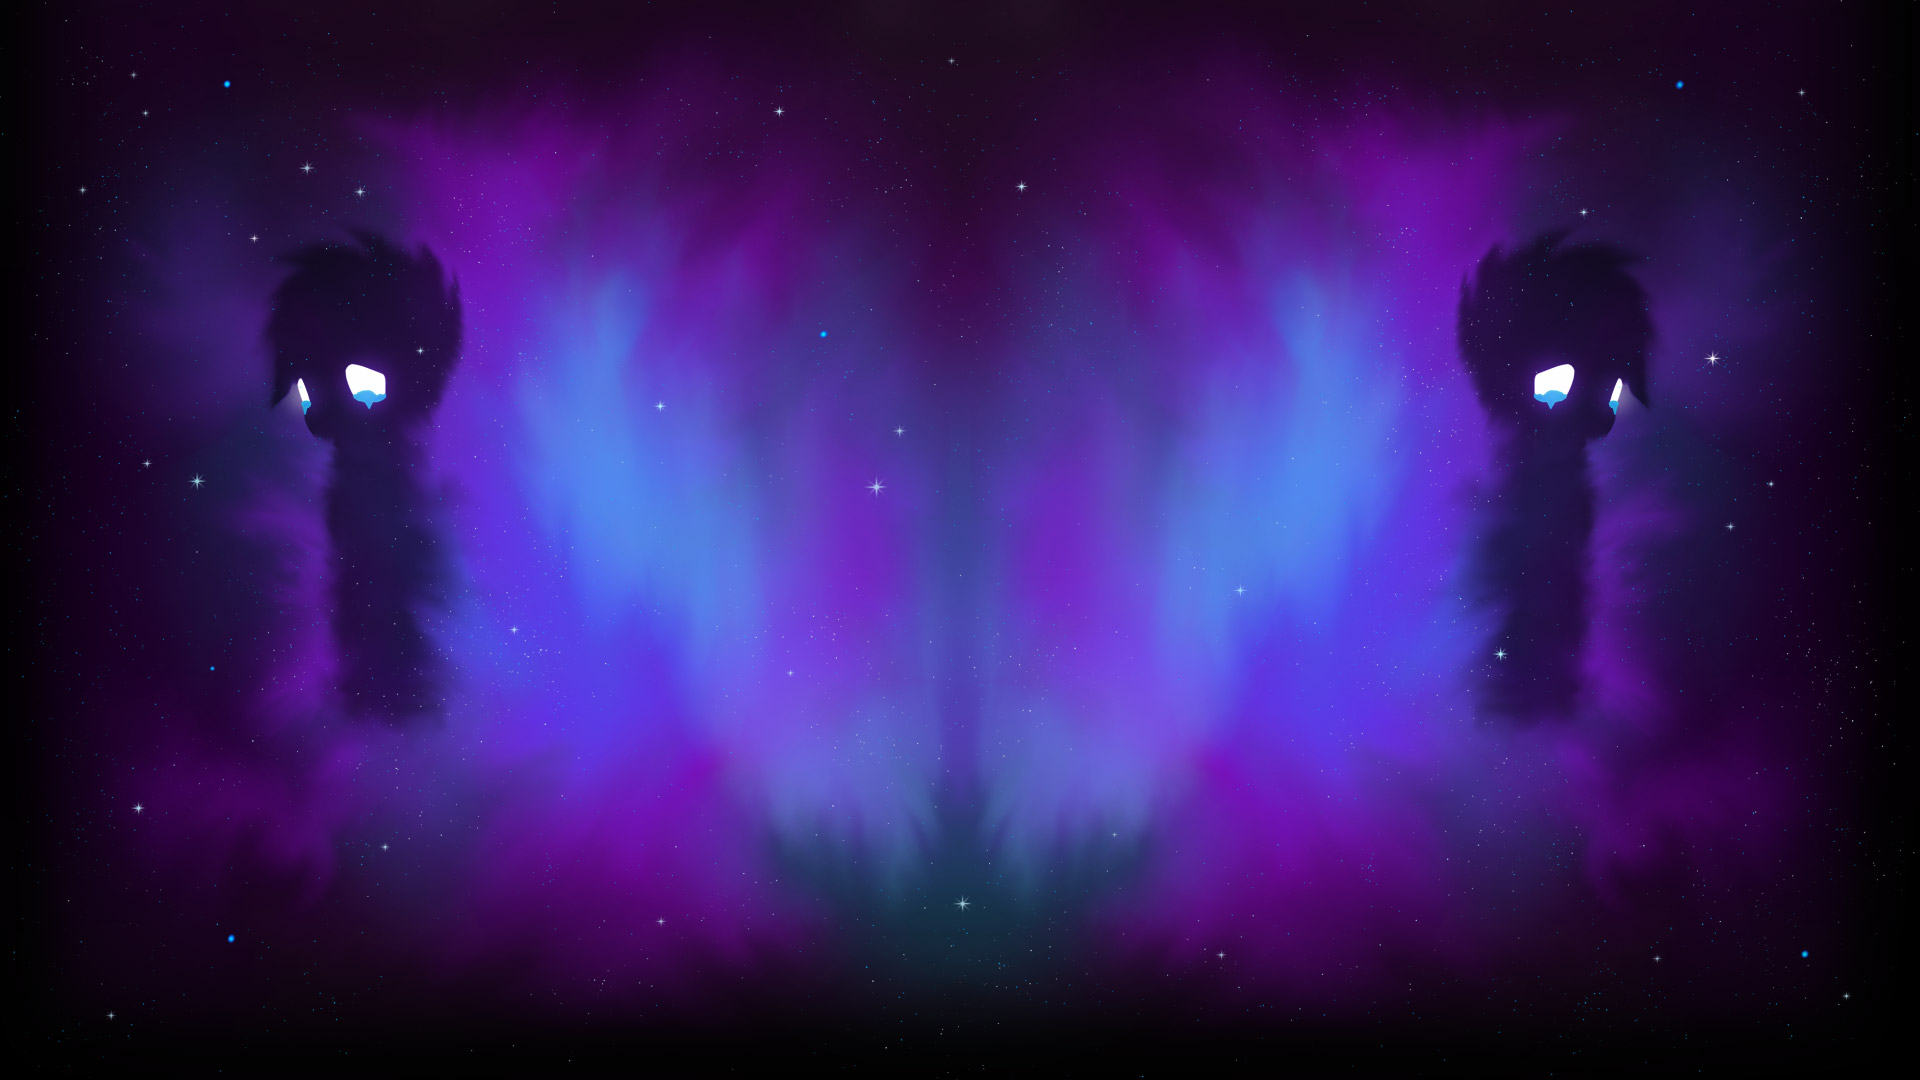 Tưởng tượng một vùng thiên thần tuyệt đẹp với những đám mây tím lấp lánh. Bức ảnh liên quan đến \'Seen Nebula purple\' sẽ đưa bạn đến những cung đường trên trời, khám phá những cảnh đẹp như mơ, mang đến cho bạn cảm giác yên bình và thư thái.